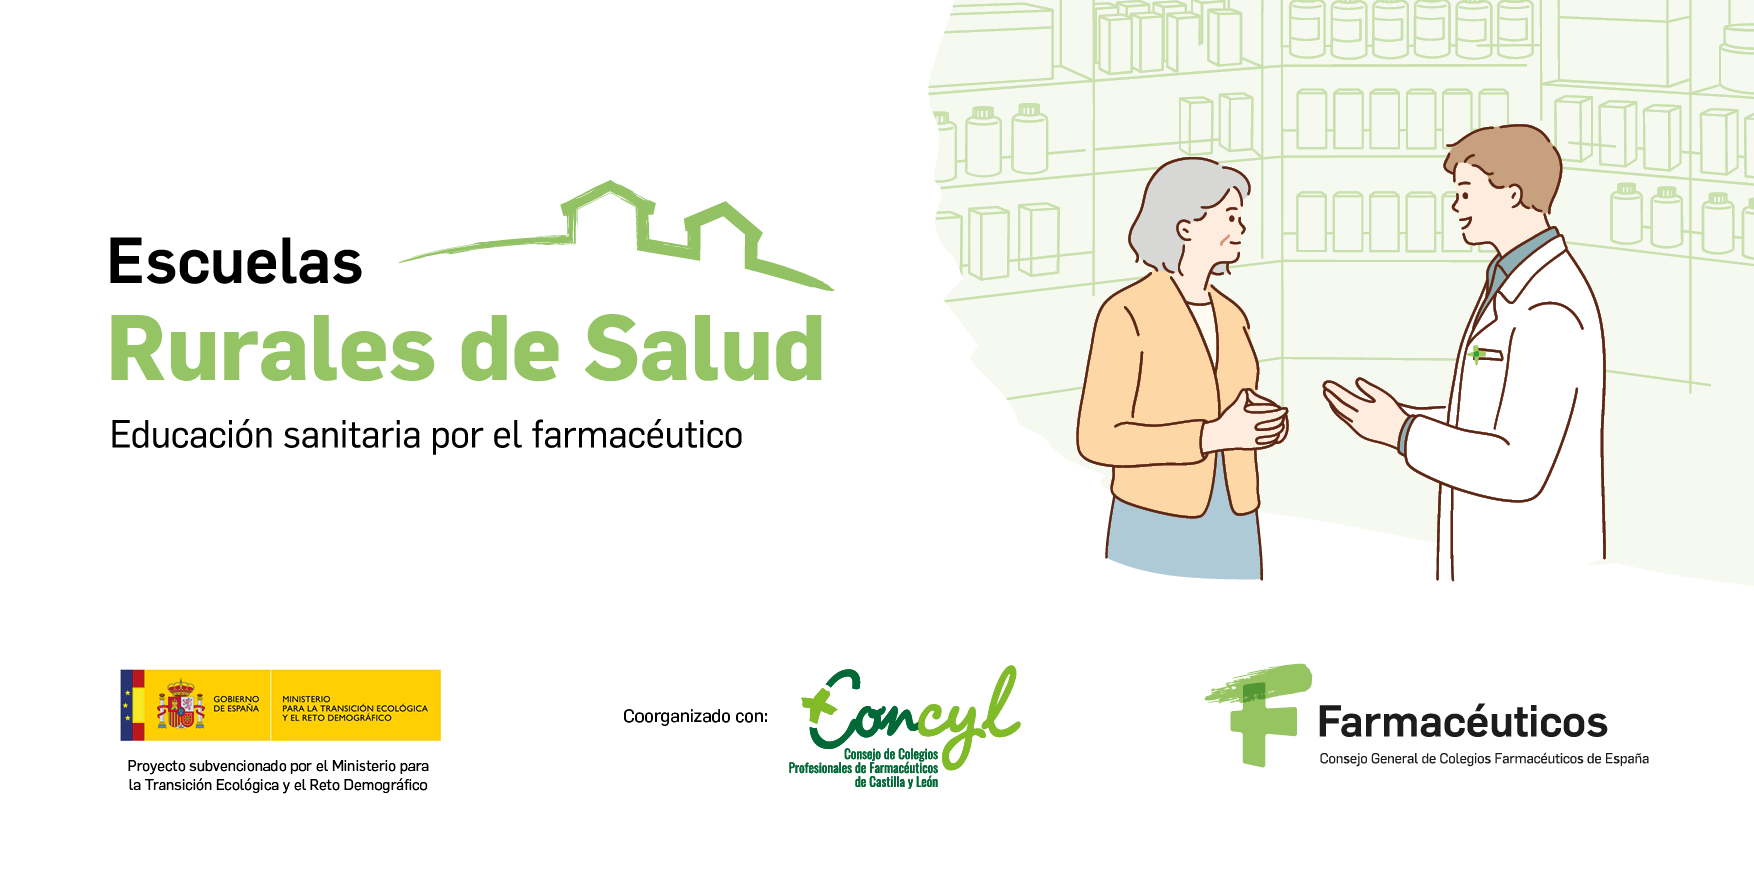 Más de 100 farmacias de Castilla y León se convertirán en Escuelas Rurales de Salud para ofrecer educación sanitaria en pequeños municipios